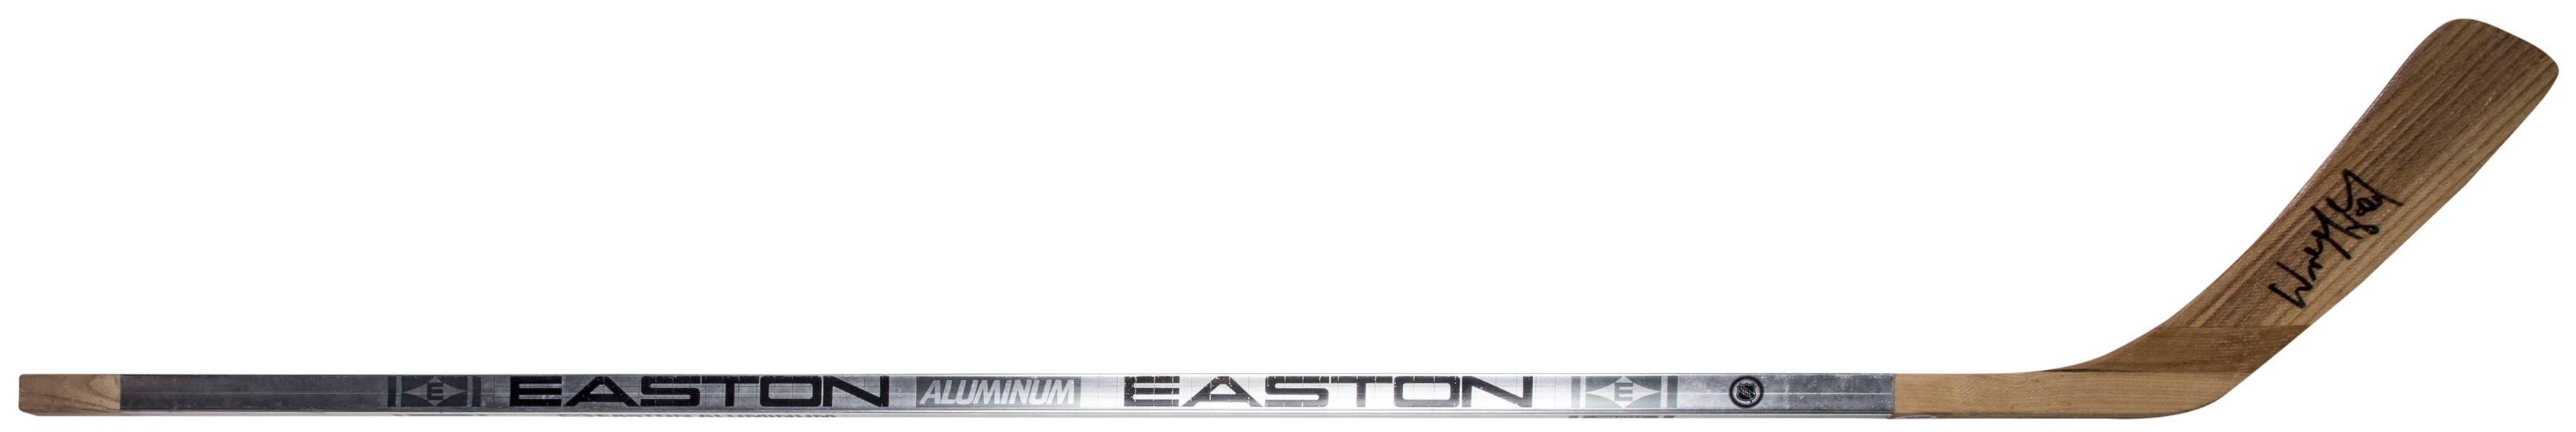 Wayne Gretzky Autographed Easton Aluminum Stick – House of Hockey